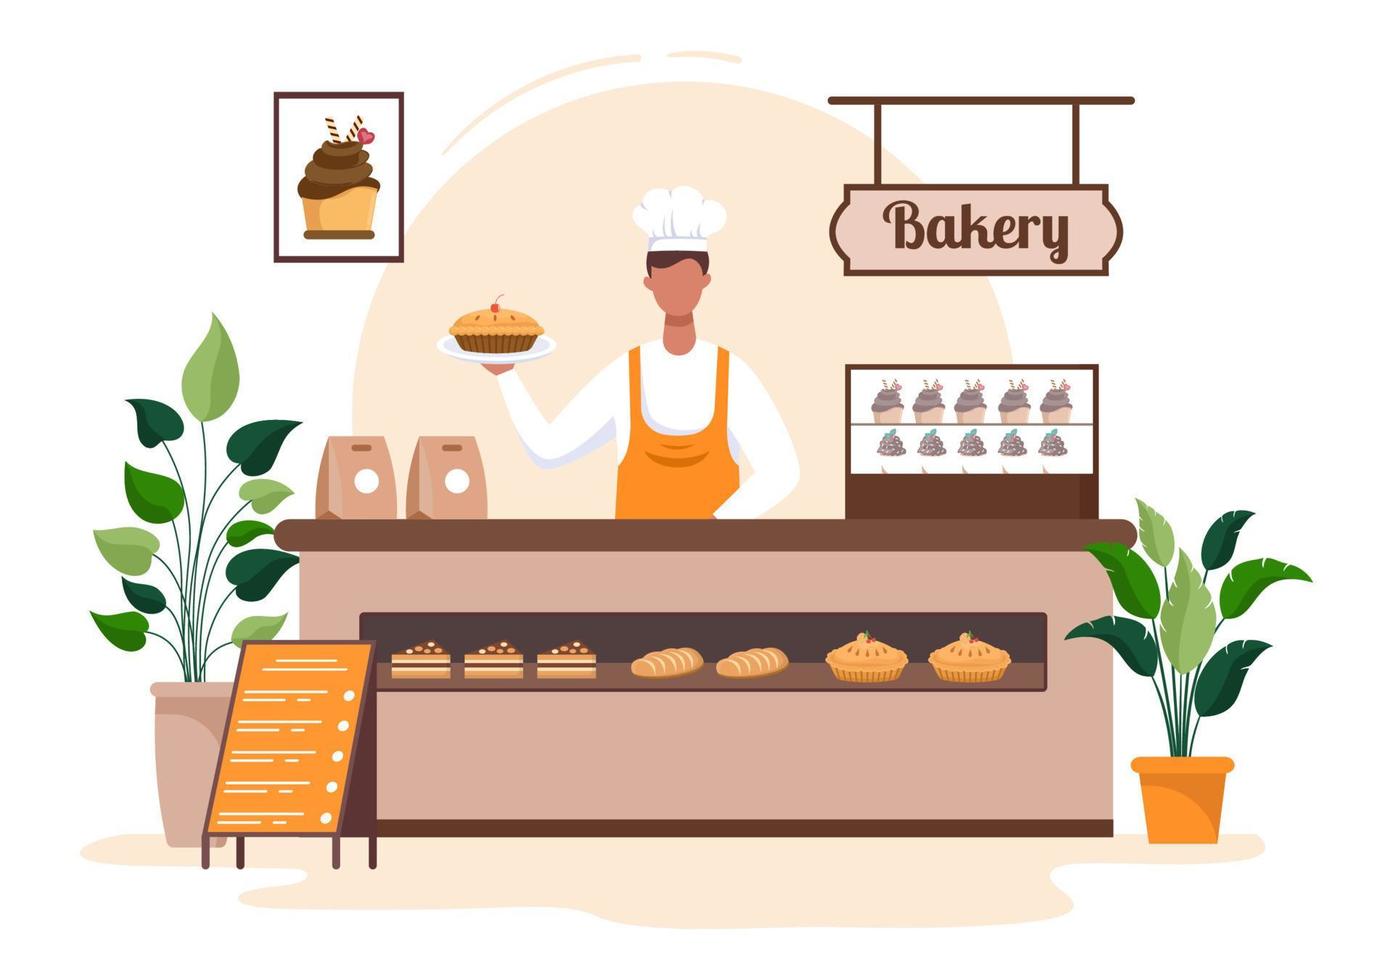 Bäckereigebäude, das verschiedene Brotsorten wie Weißbrot, Gebäck und andere verkauft, die alle in flachem Hintergrund zur Posterillustration gebacken werden vektor